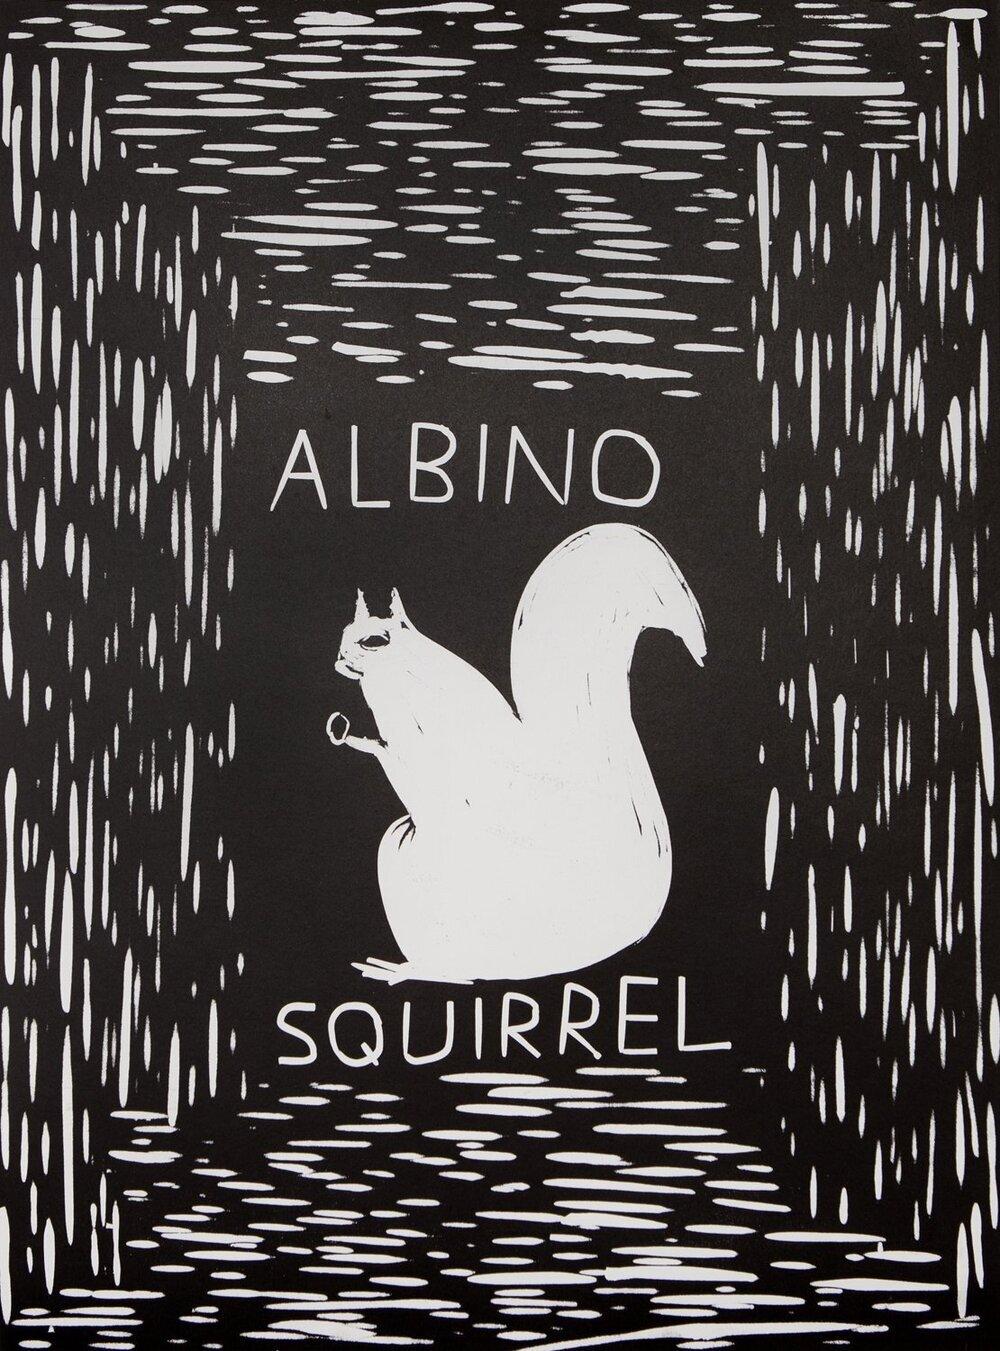 albino squirrel for sale